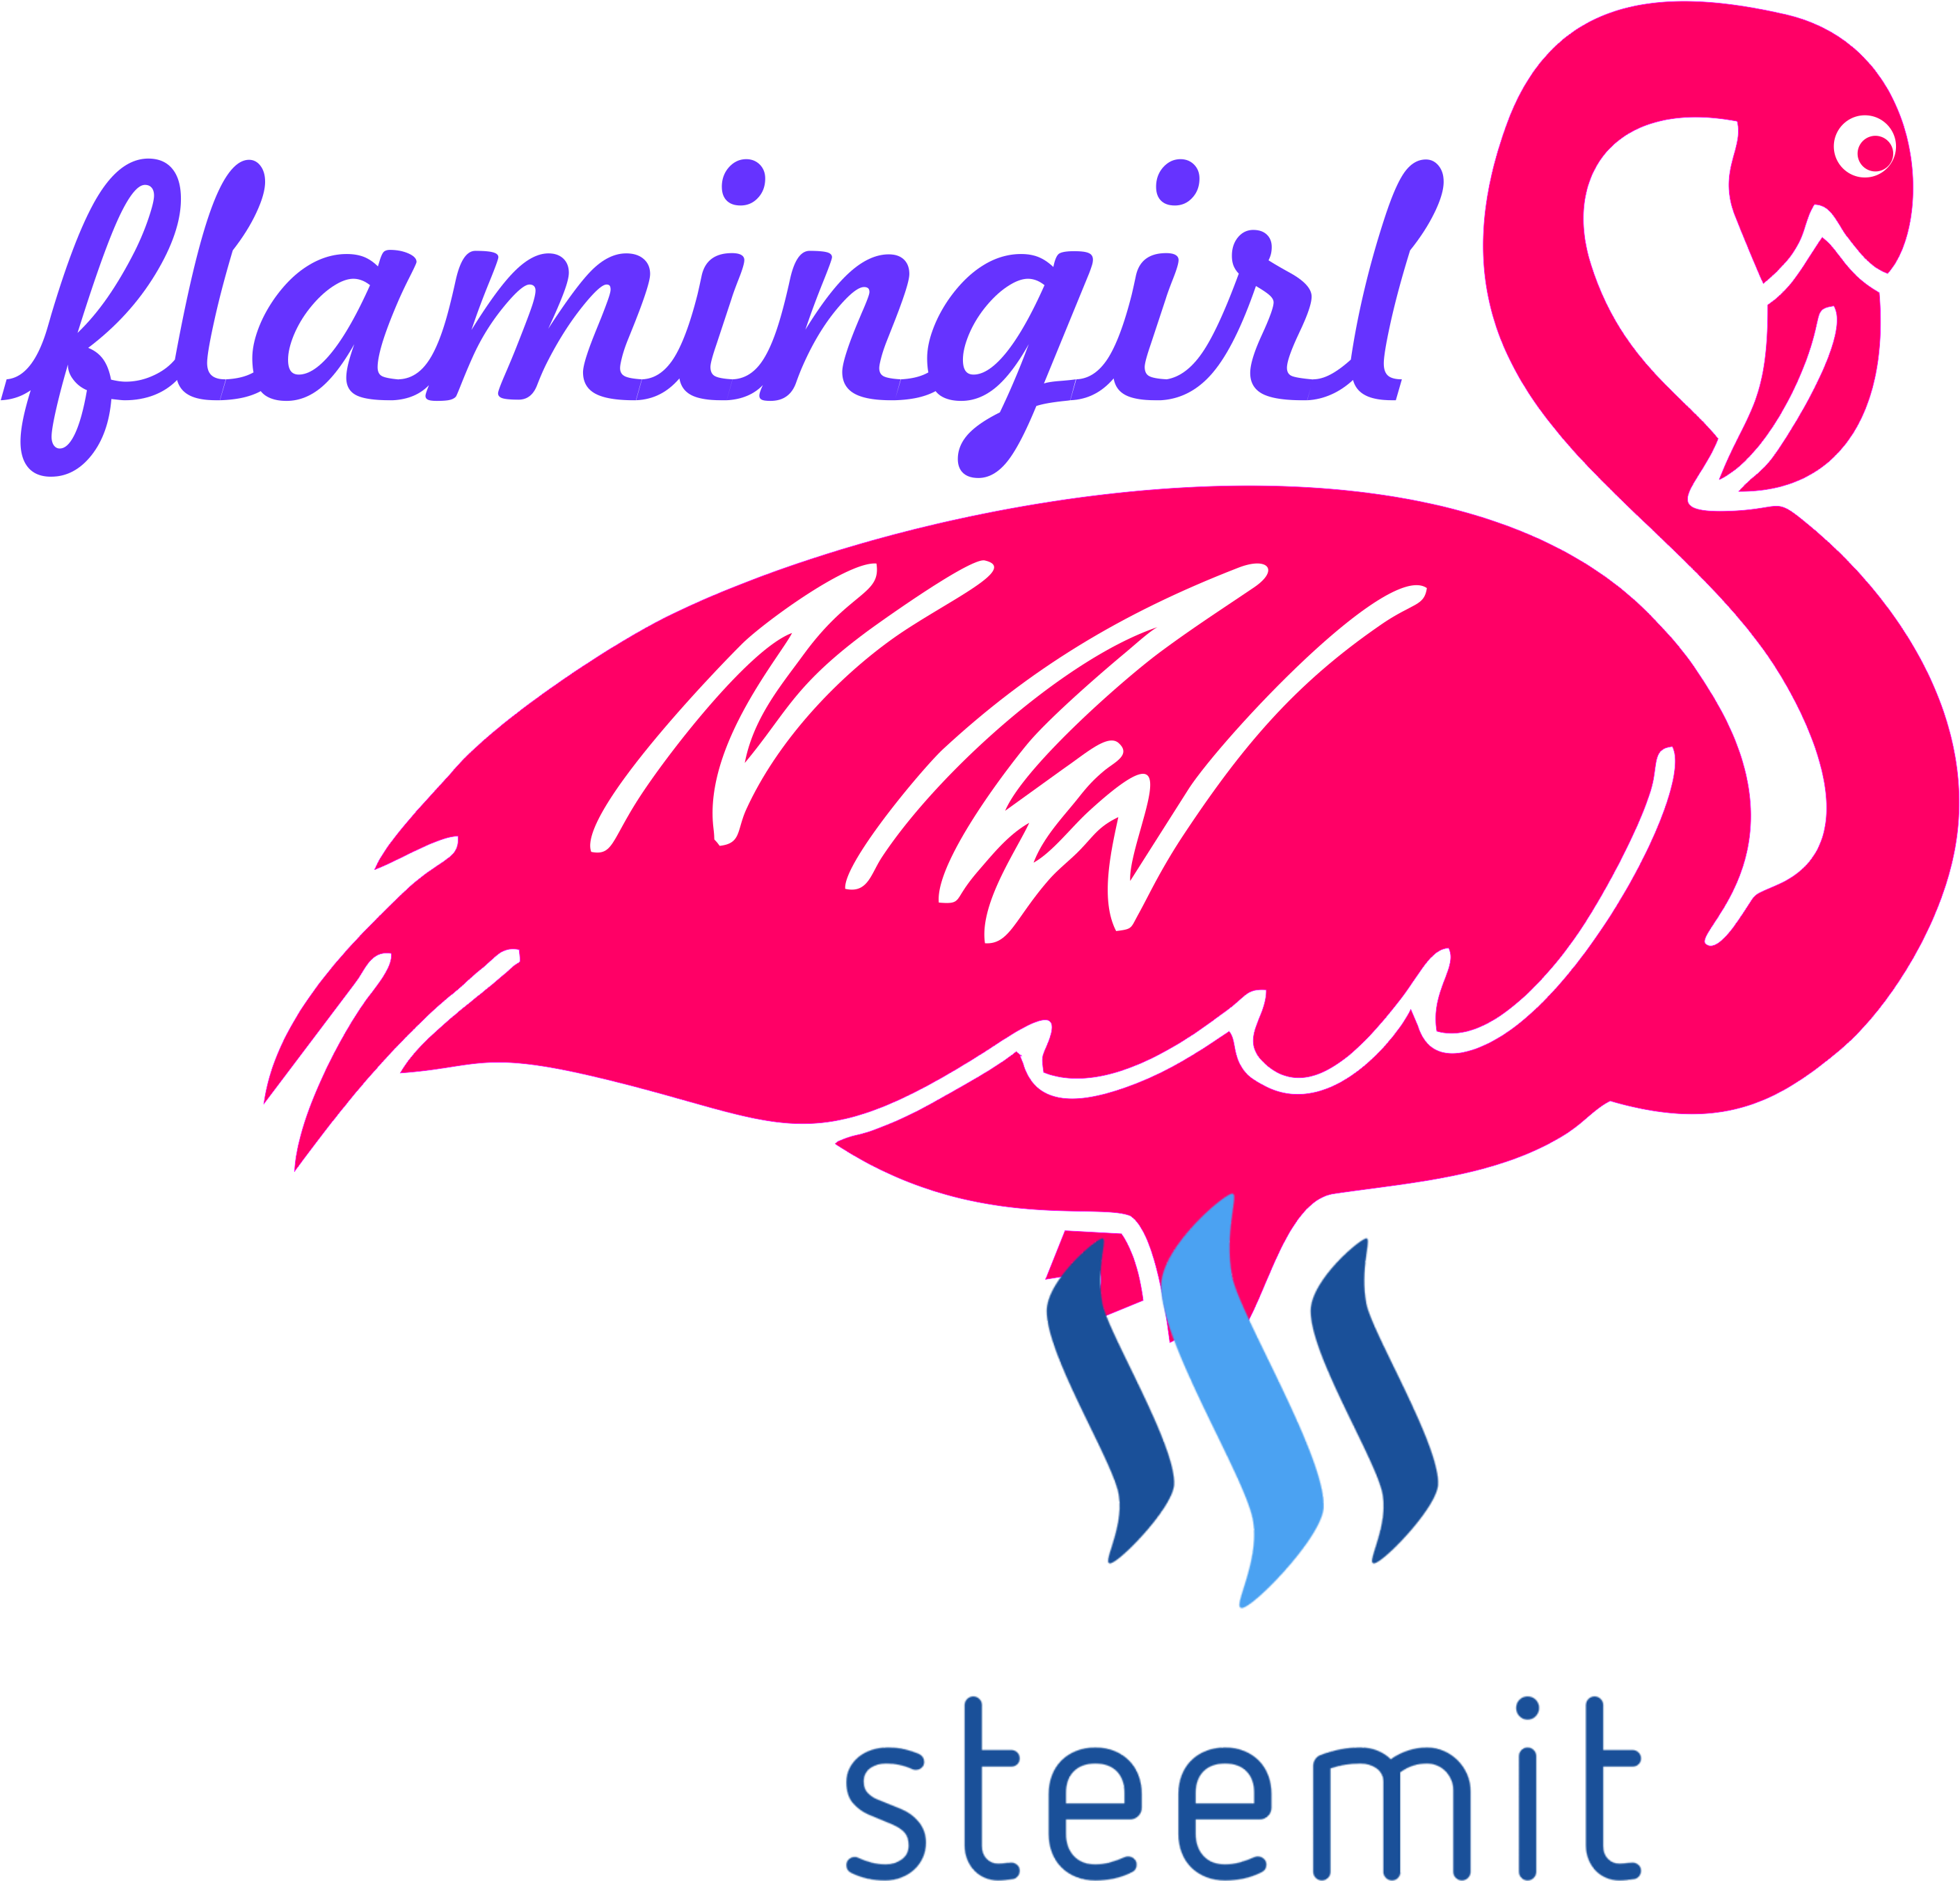 I Show You A Pink Flamingo, Their Natural Color, Impressive, - Flamingos (2816x2737)